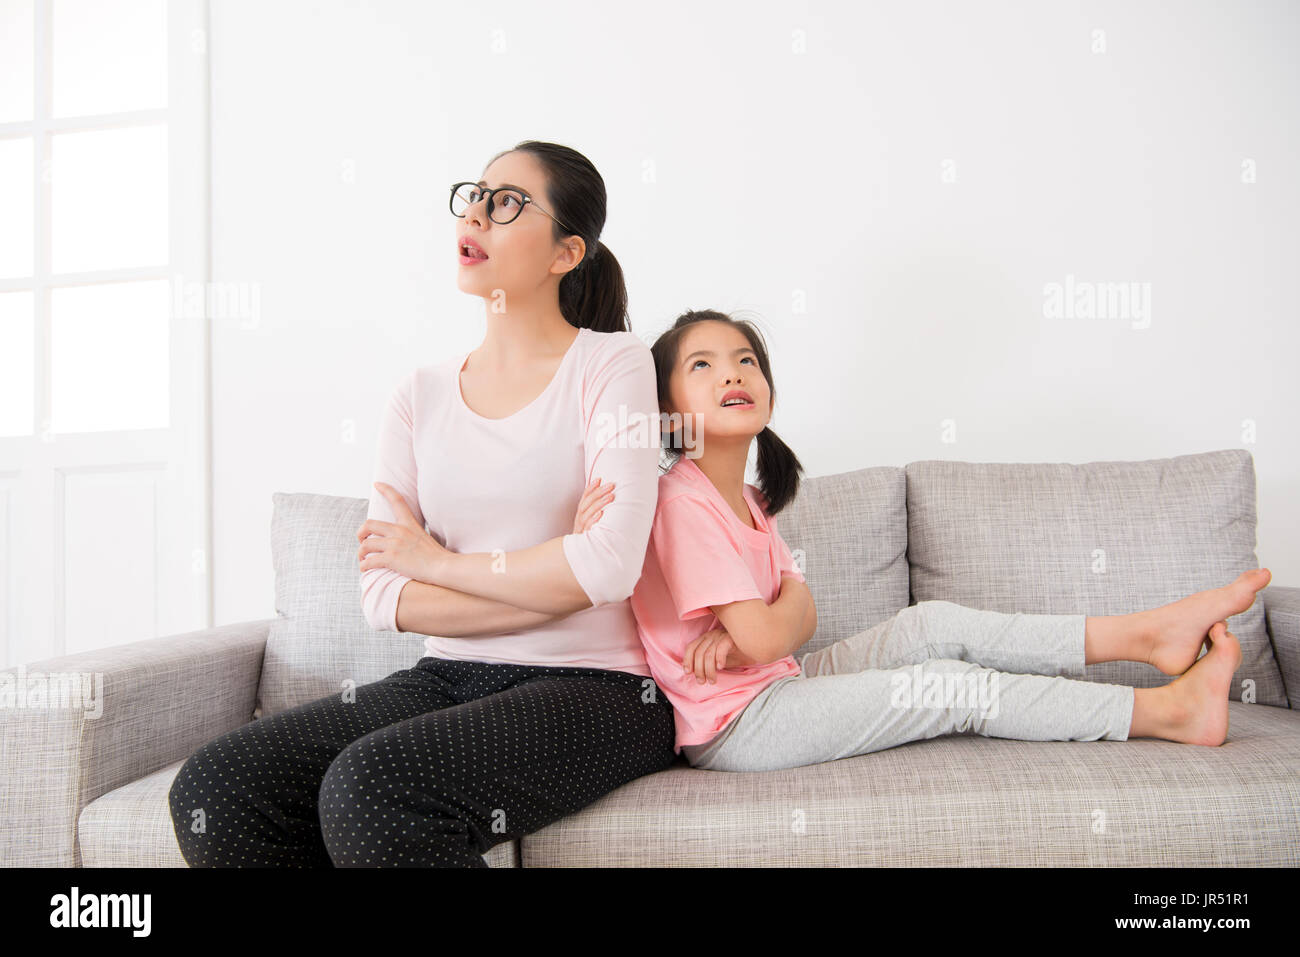 junge Hausfrau mit niedlichen kleinen Mädchen machen tagsüber Tagträumen auf Urlaub zu Hause beobachten, dass Luft denken hat einige großartige Idee, die sitzen auf dem Sofa in t Stockfoto